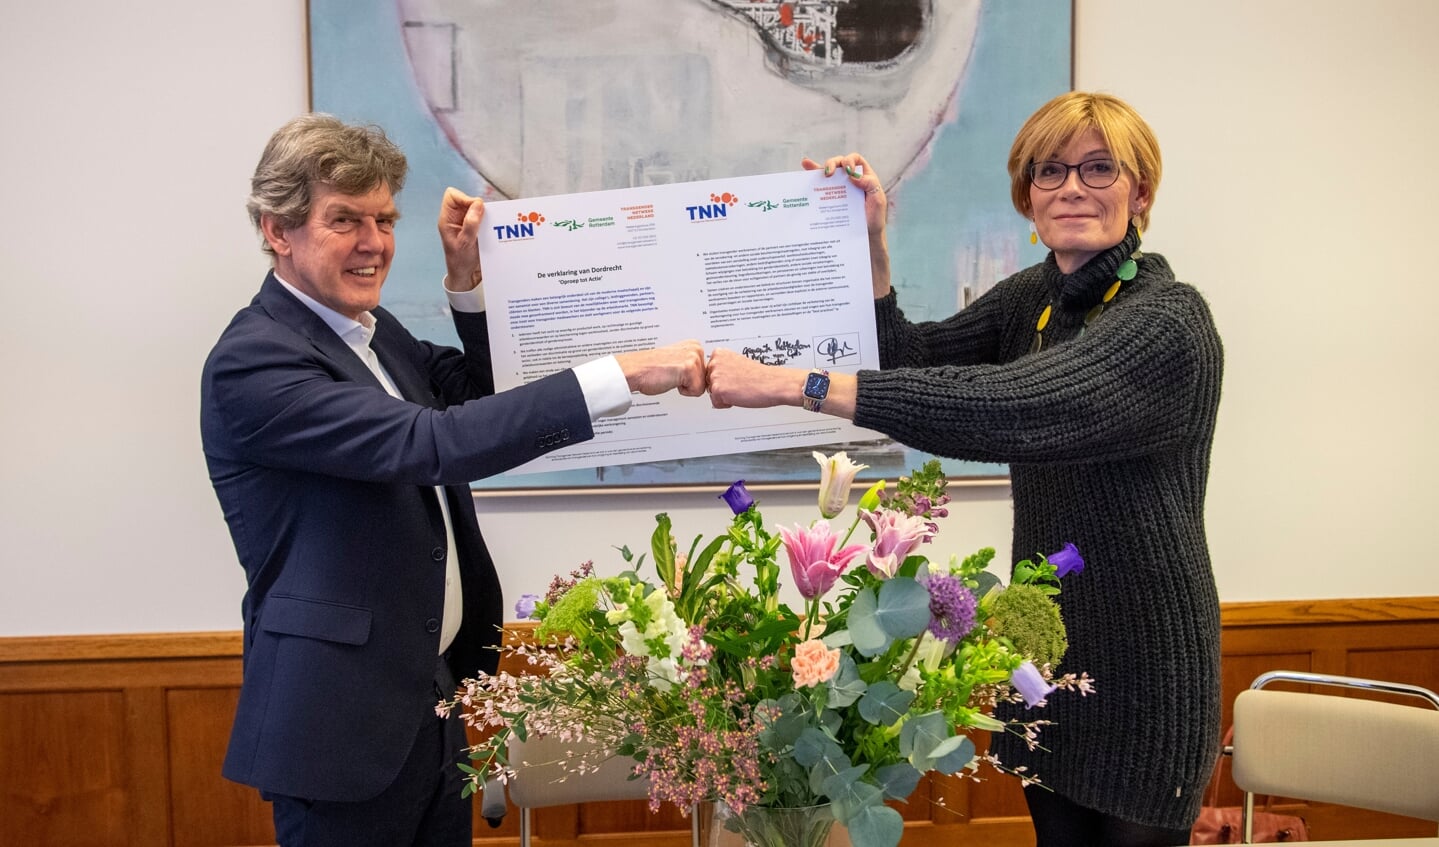 Links wethouder Arjan van Gils met de verklaring van Dordrecht. Foto: Jan van der Ploeg